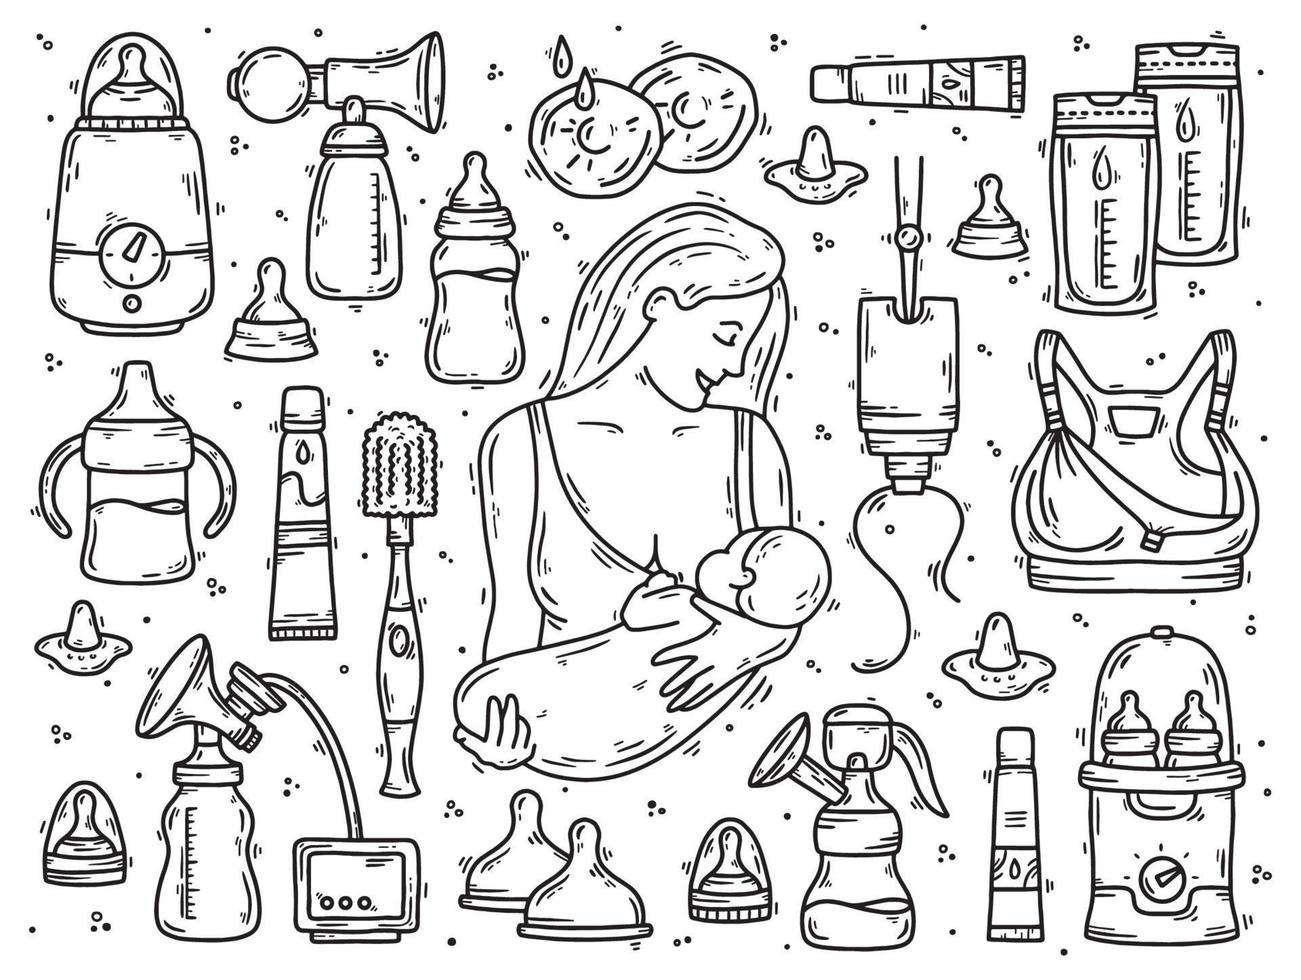 lactancia materna y lactancia de una mujer con un bebé, un conjunto de iconos de dibujo de doodle de vector. Aparatos para la lactancia y nutrición con leche. vector